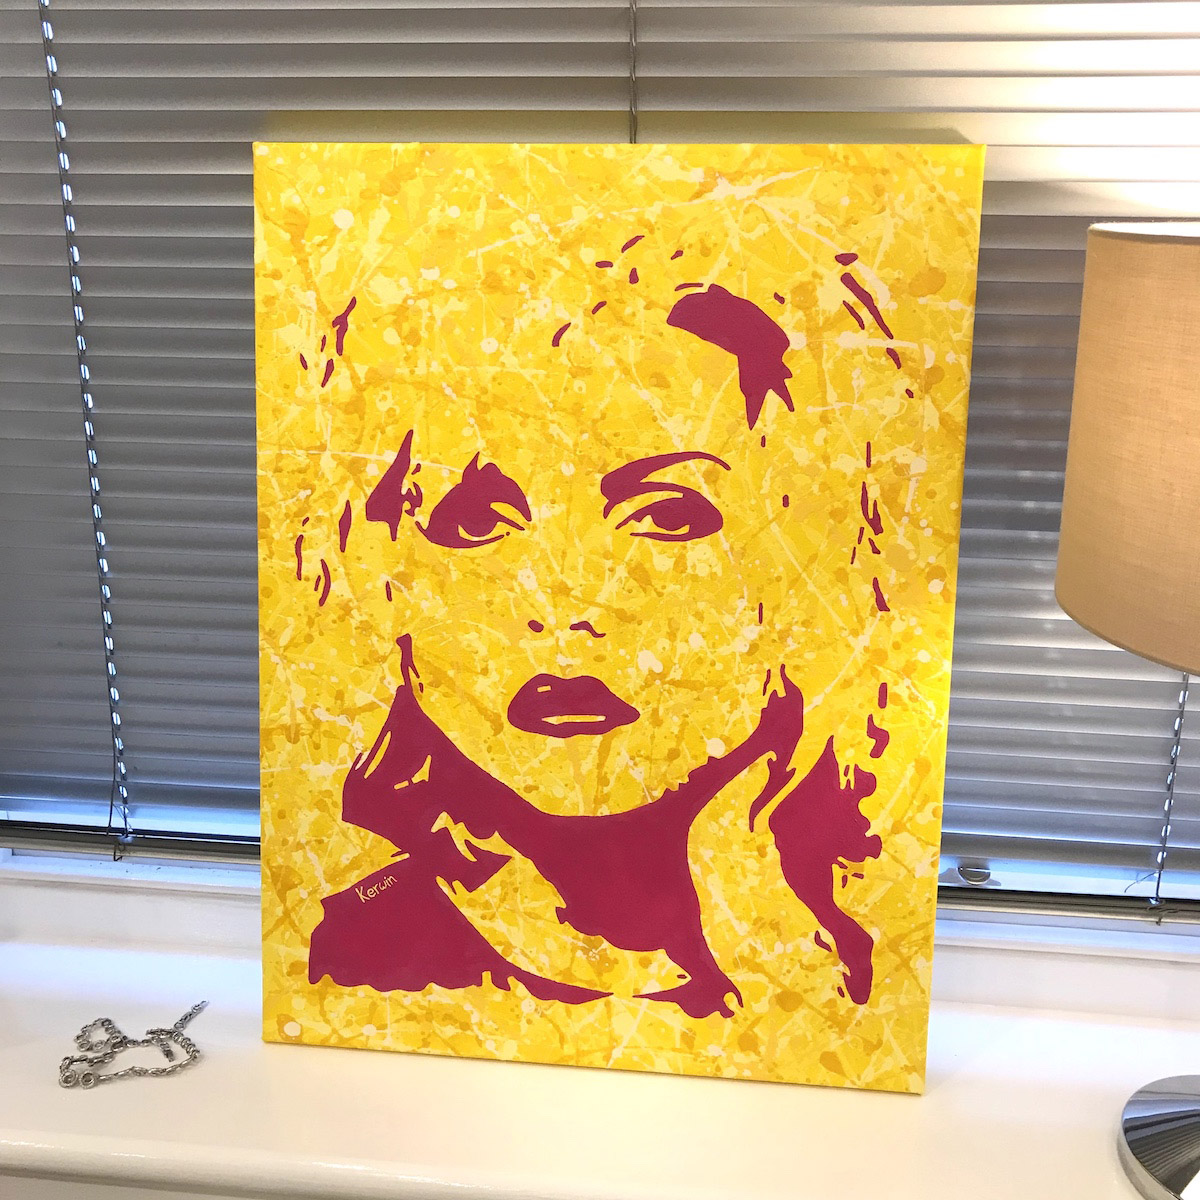 Blondie pop art music painting By Kerwin